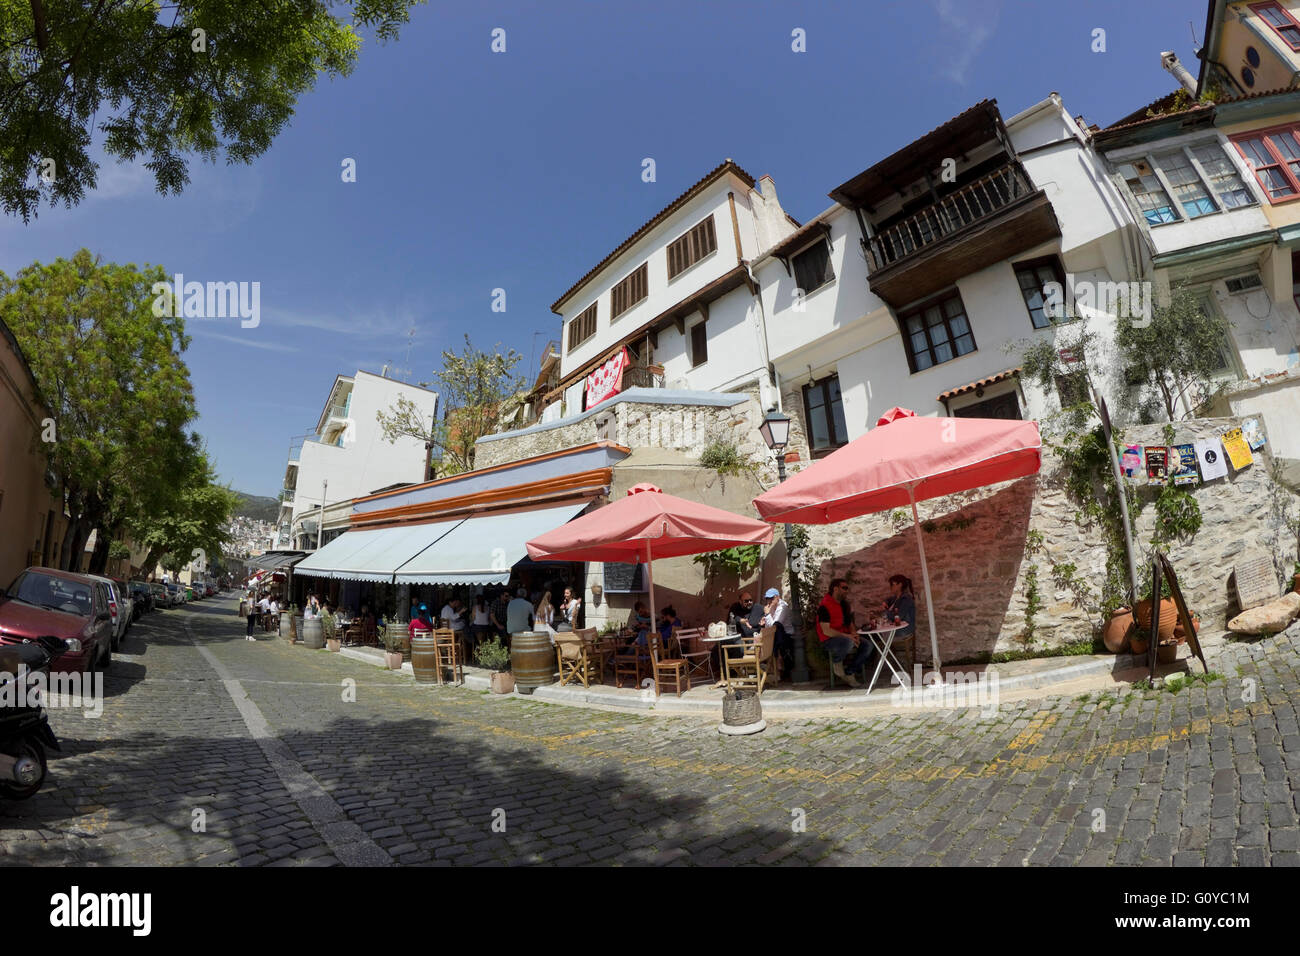 Café et des boutiques de souvenirs sur Poulidou & Mehmet Ali str., & architecture traditionnelle dans les bâtiments du quartier de Panagia, Kavala, Grèce Banque D'Images